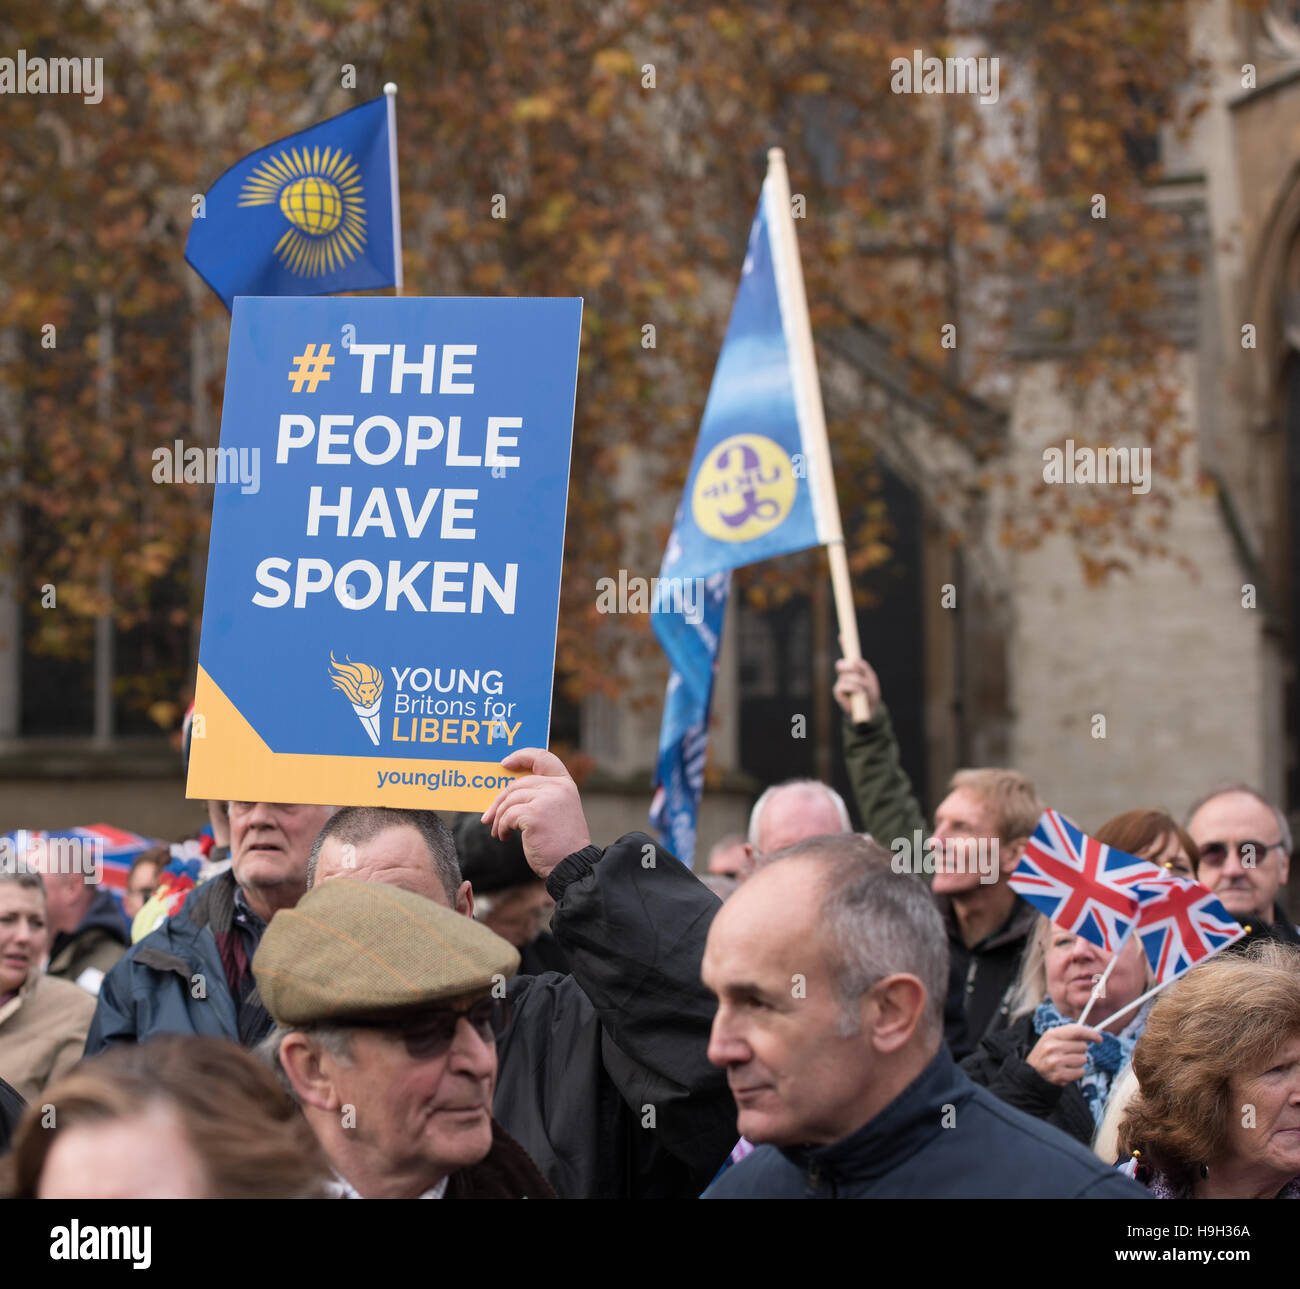 Londres, Reino Unido. 23 de noviembre de 2016. Pro rally Brexit fuera de la Cámara de los Comunes de crédito: Ian Davidson/Alamy Live News Foto de stock